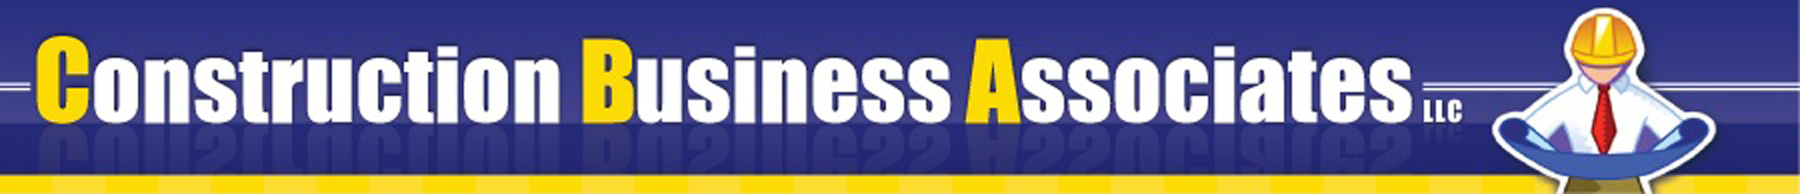 Construction Business Associates, LLC Logo